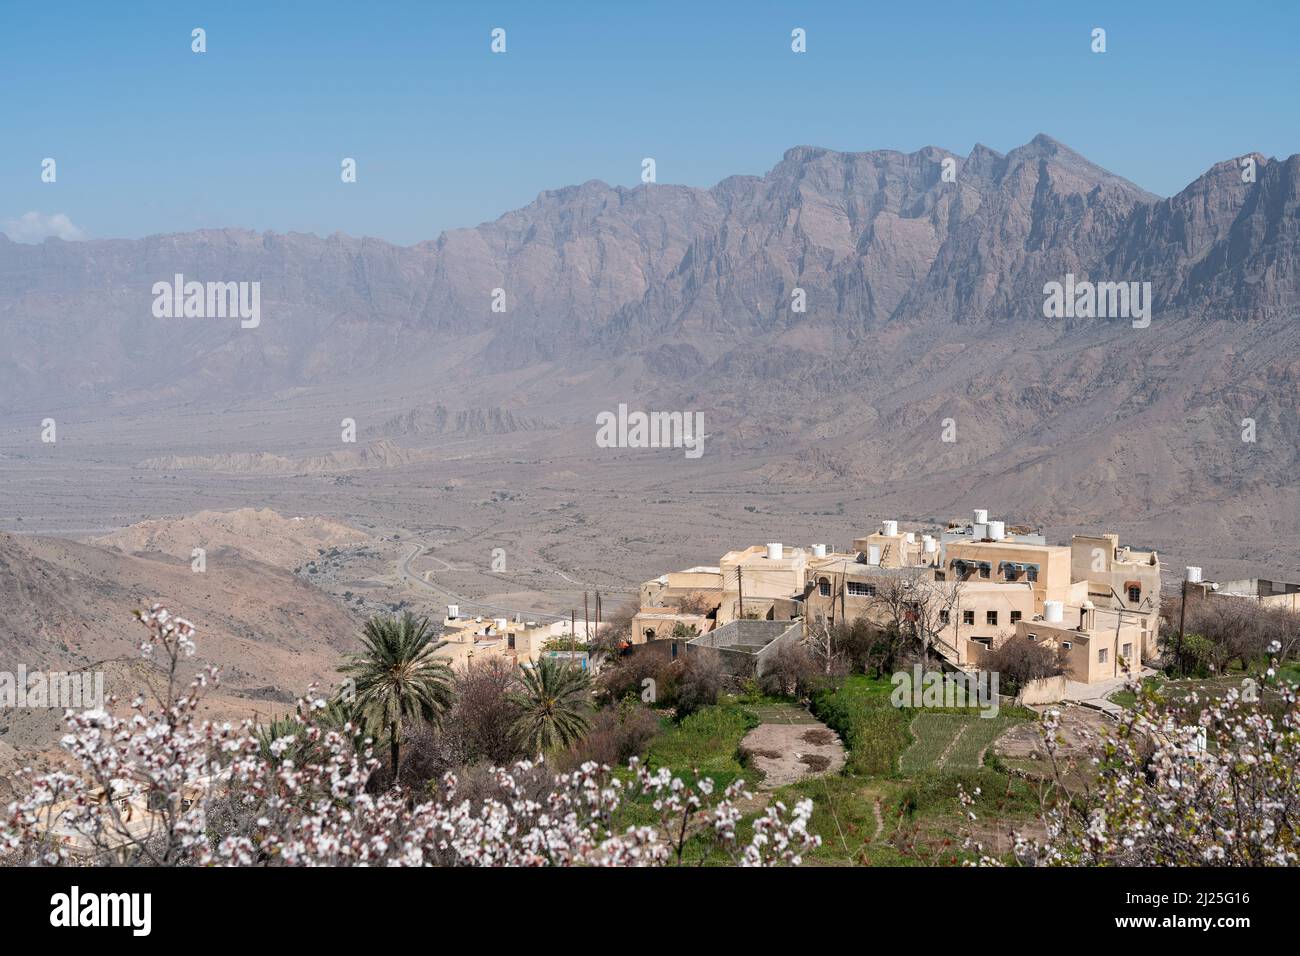 Blick auf das traditionelle omanische Dorf Wakan, mit Blick auf die Gubrah Bowl und die Hajar Mountains, von einer blühenden und palmengefüllten Plantage aus gesehen Stockfoto